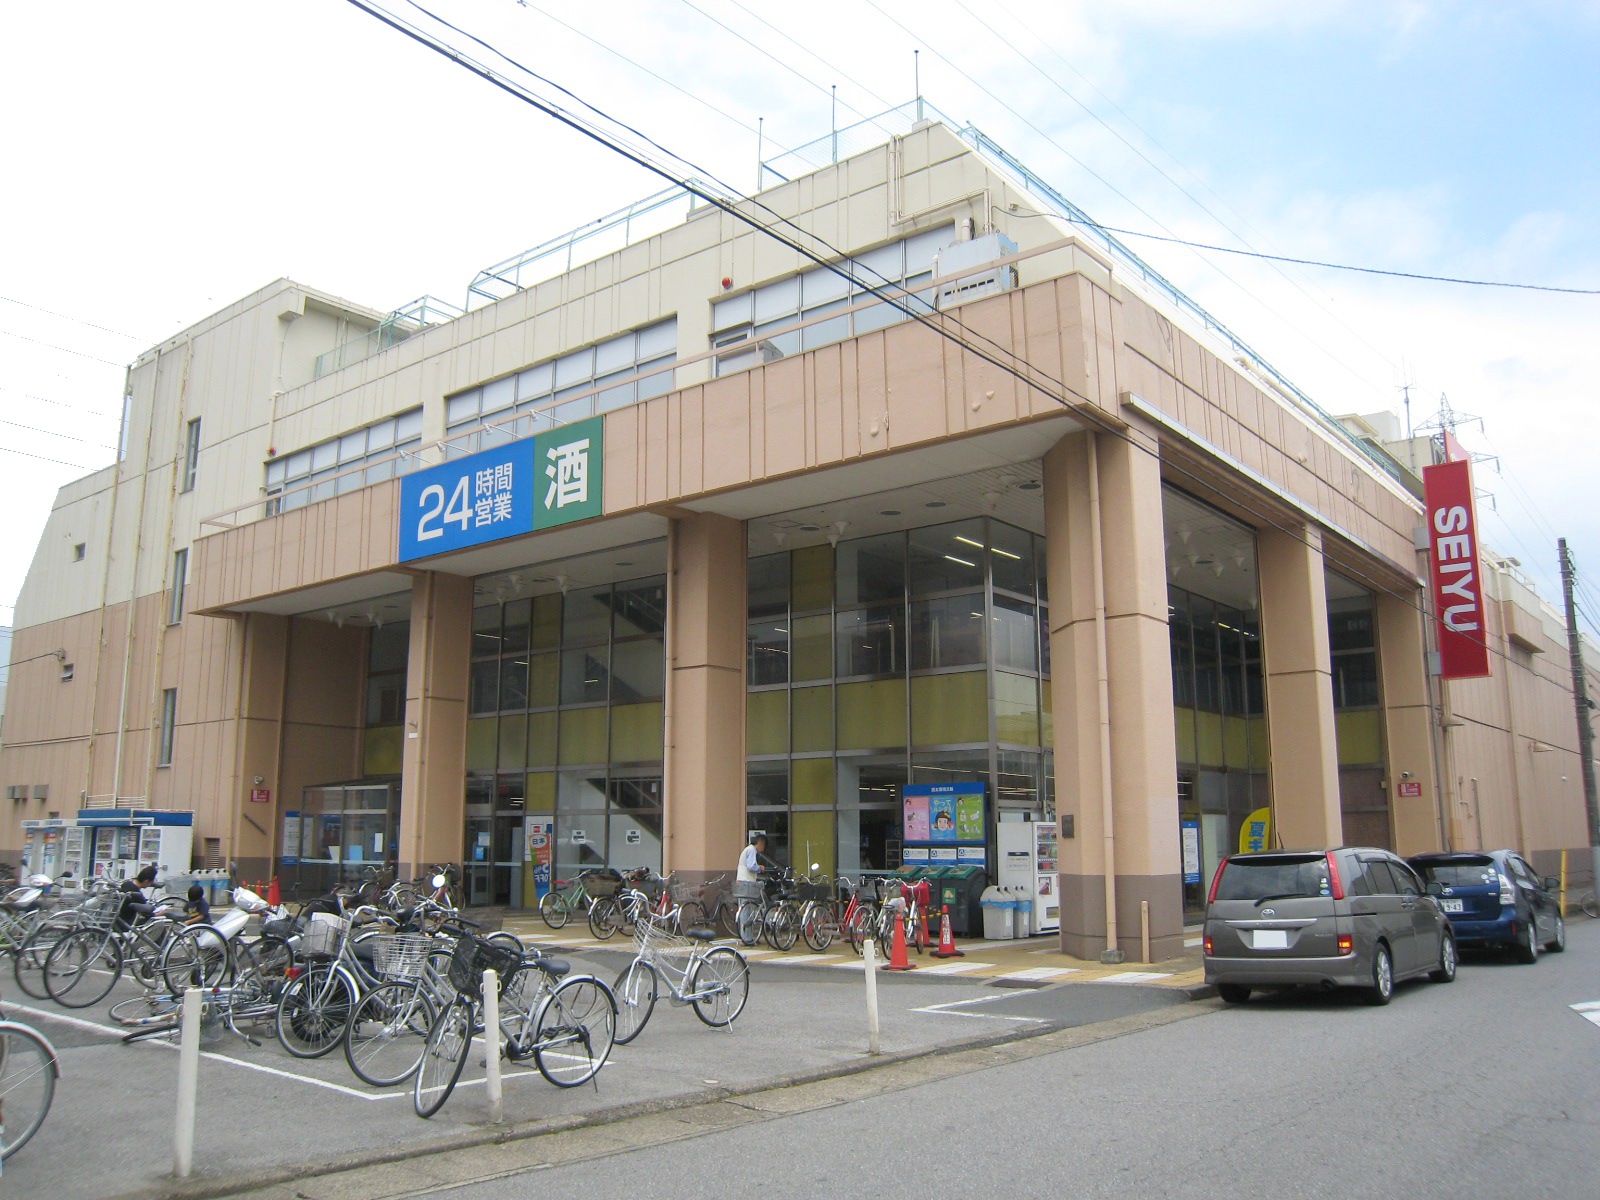 Supermarket. Seiyu Tsuga store up to (super) 1135m